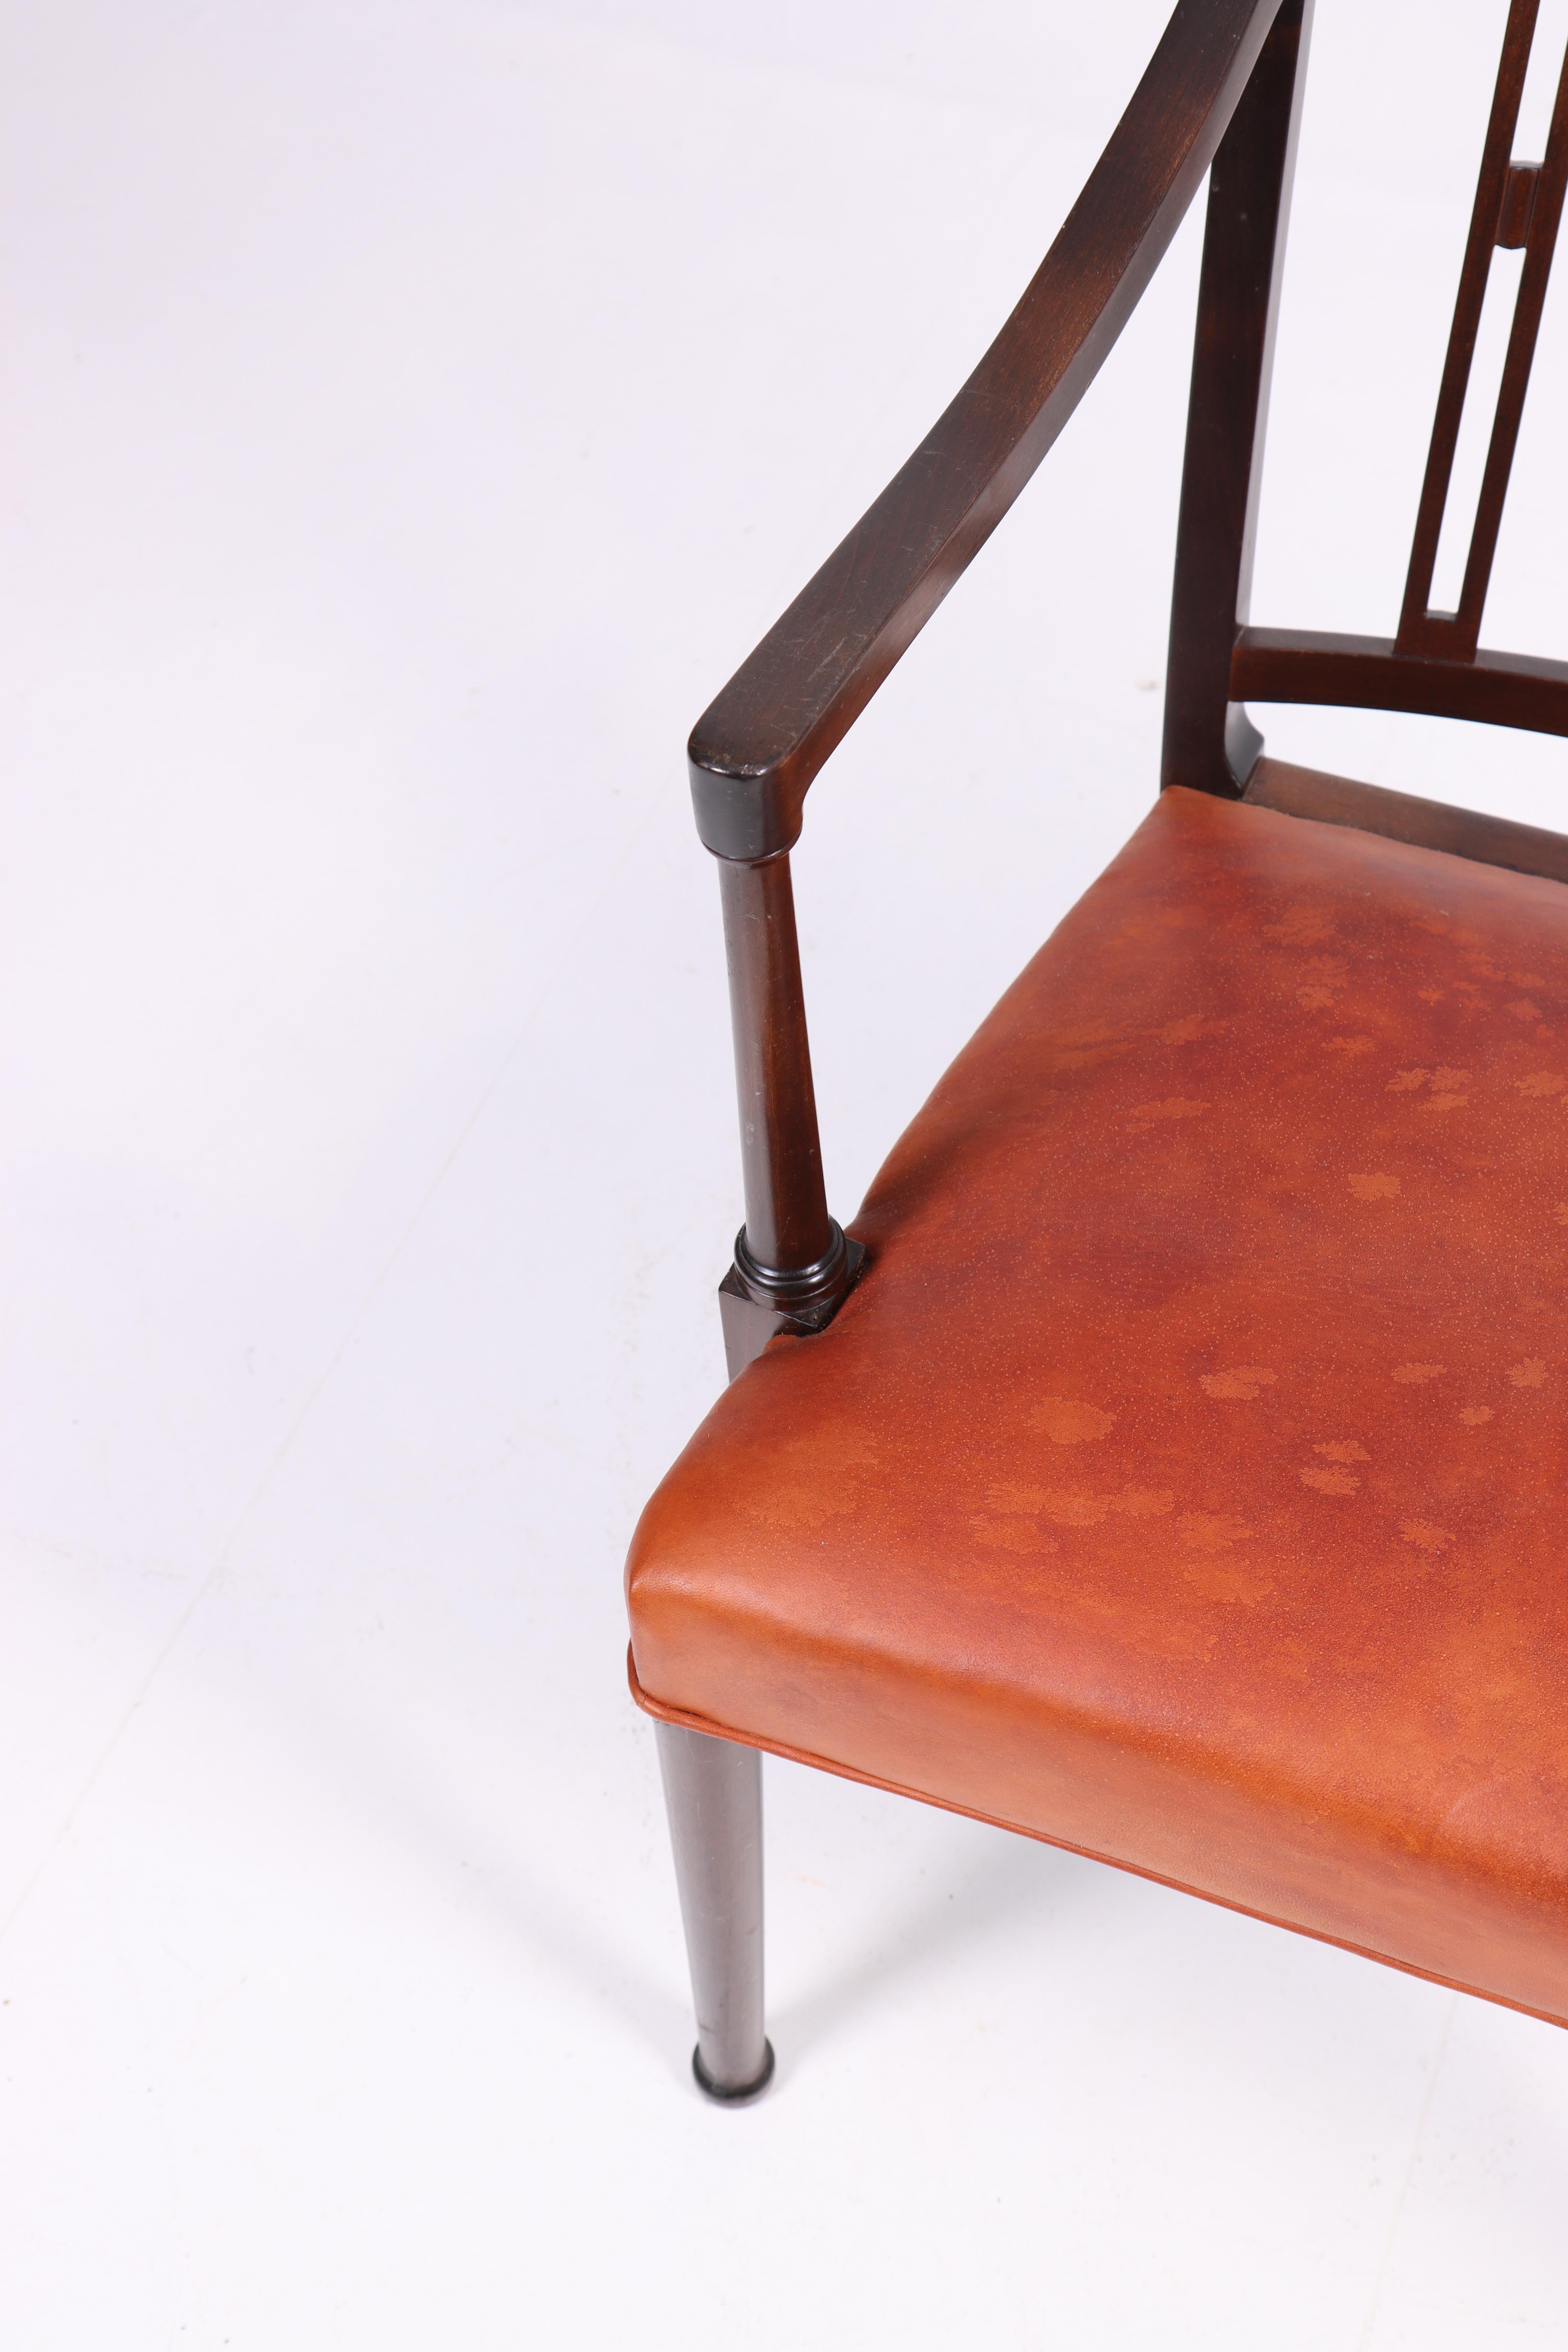 Sessel aus patiniertem Leder, entworfen von Ole Wanschar M.A.A. für A.J. Iversen Cabinetmakers in den 1950er Jahren. Hergestellt in Dänemark. Toller Zustand.